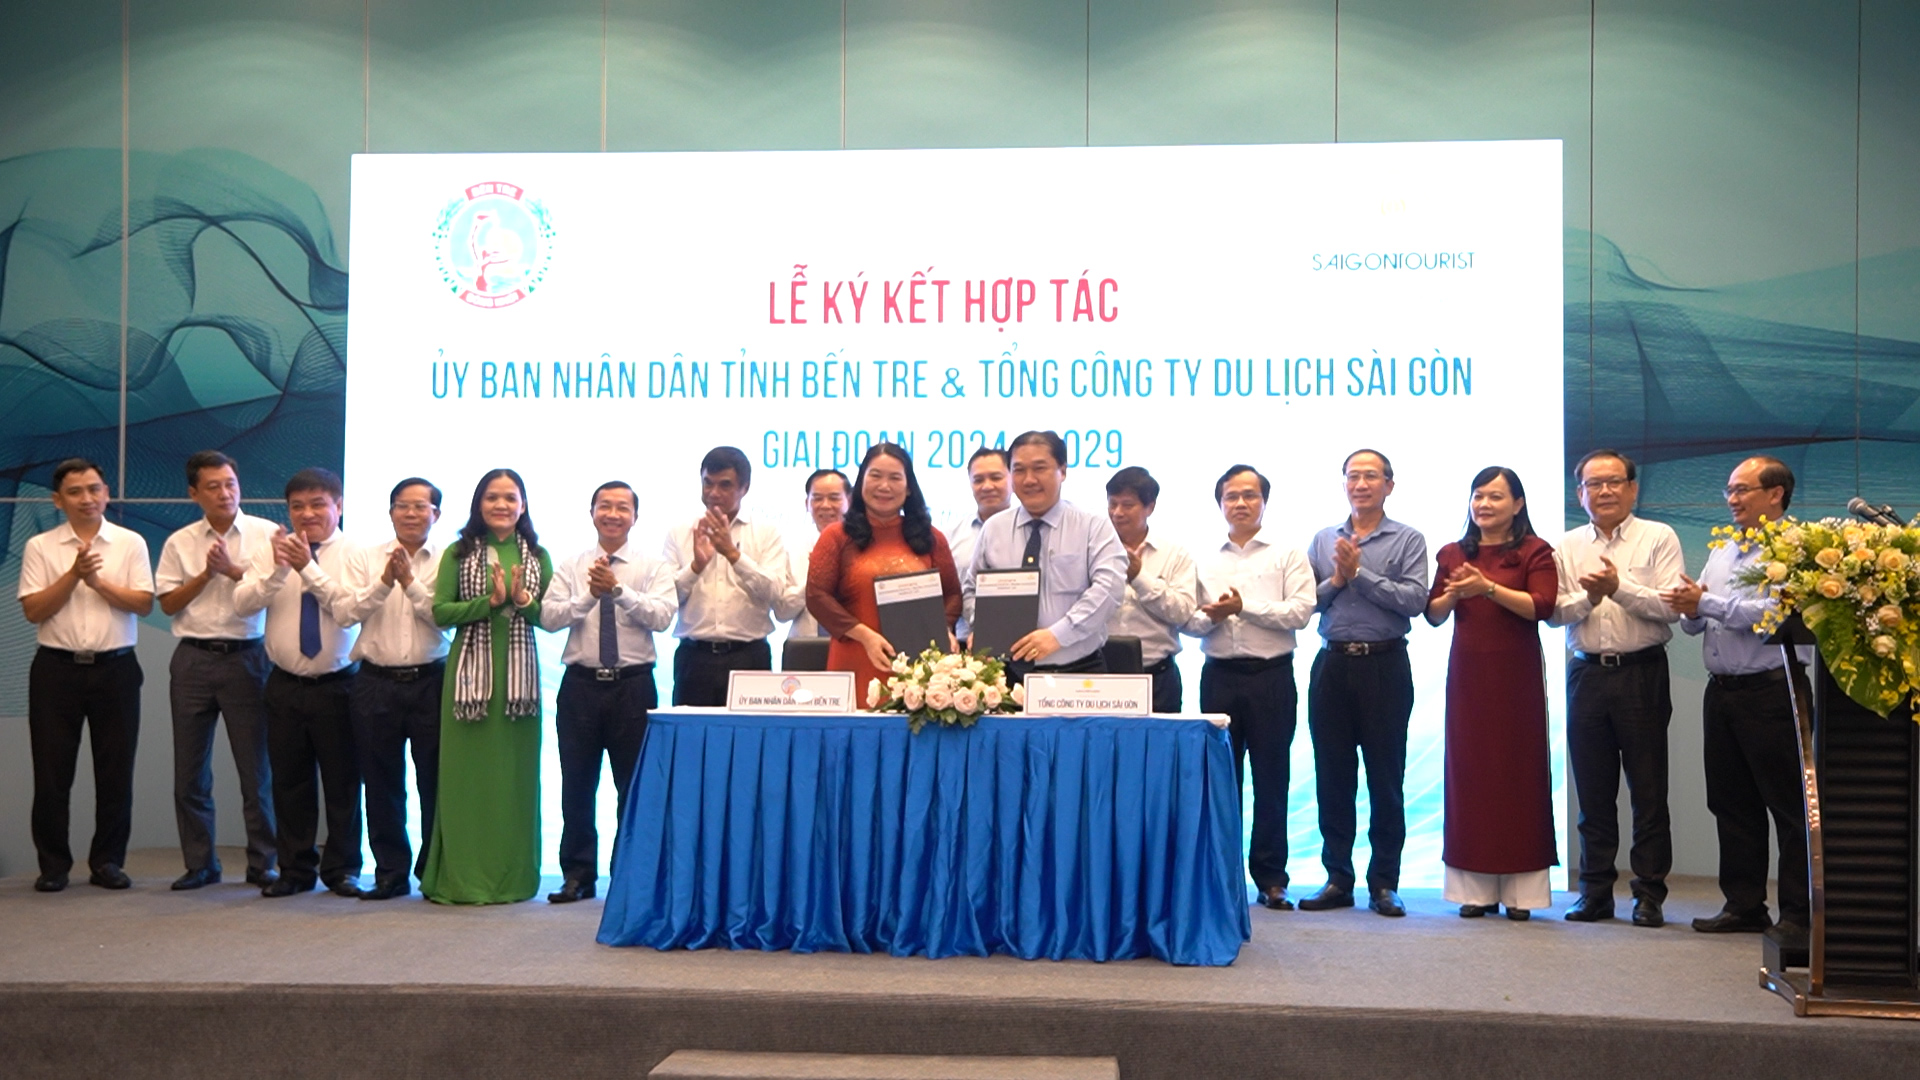 UBND tỉnh Bến Tre và Tổng Công ty Du lịch Sài Gòn ký kết hợp tác